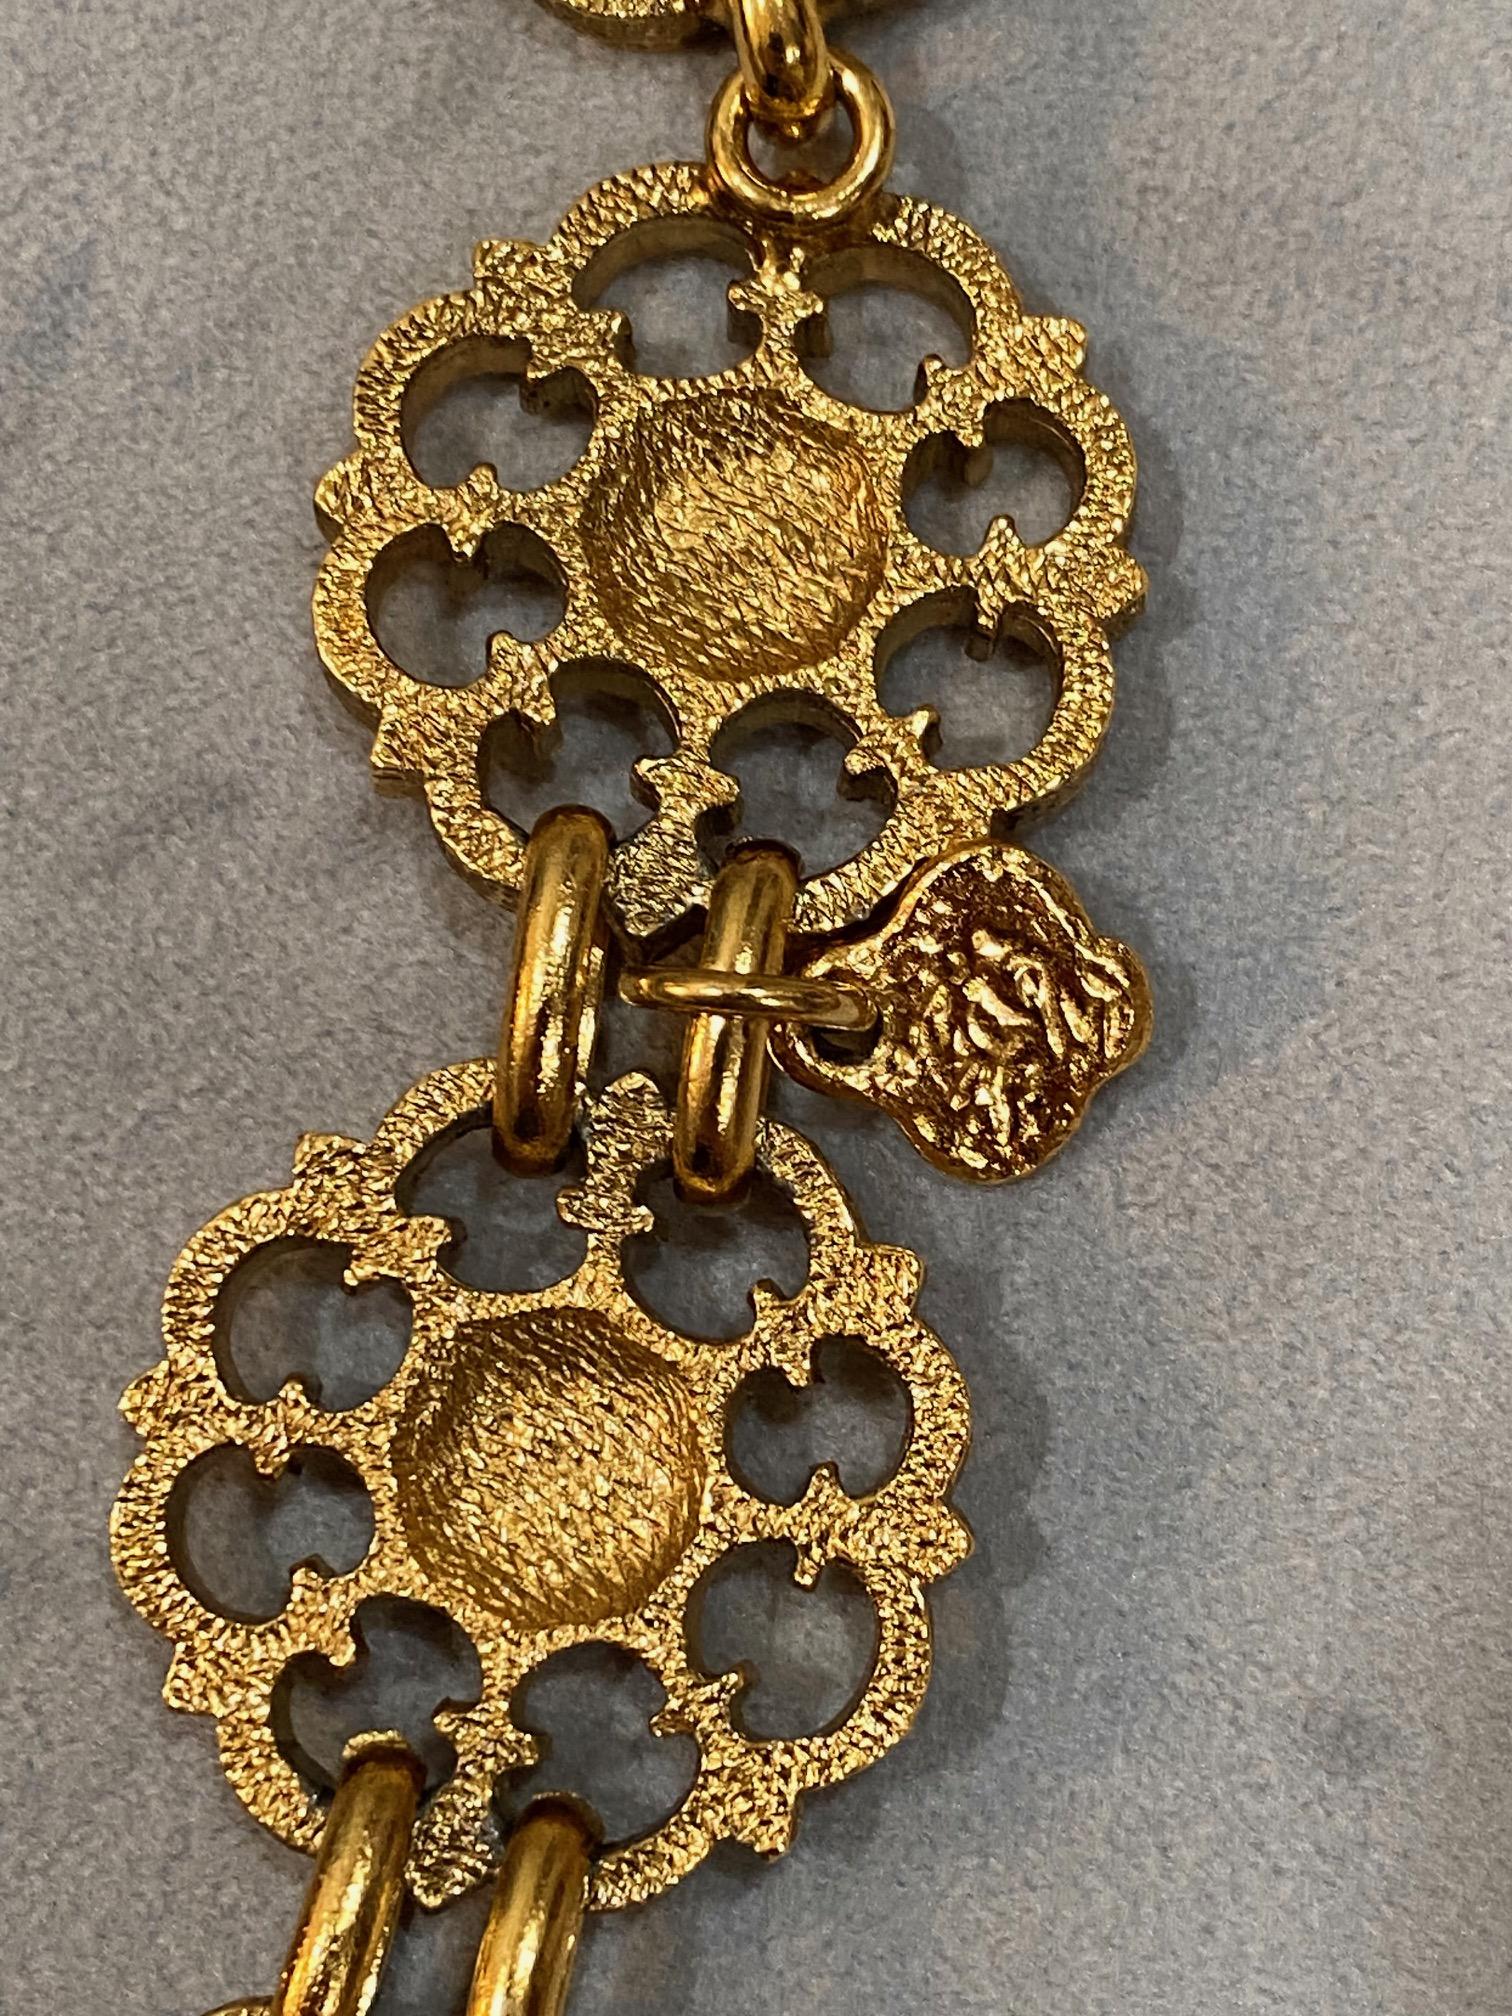 Yves Saint Laurent, Rive Gauche, 1980s Gold Belt / Necklace For Sale 12